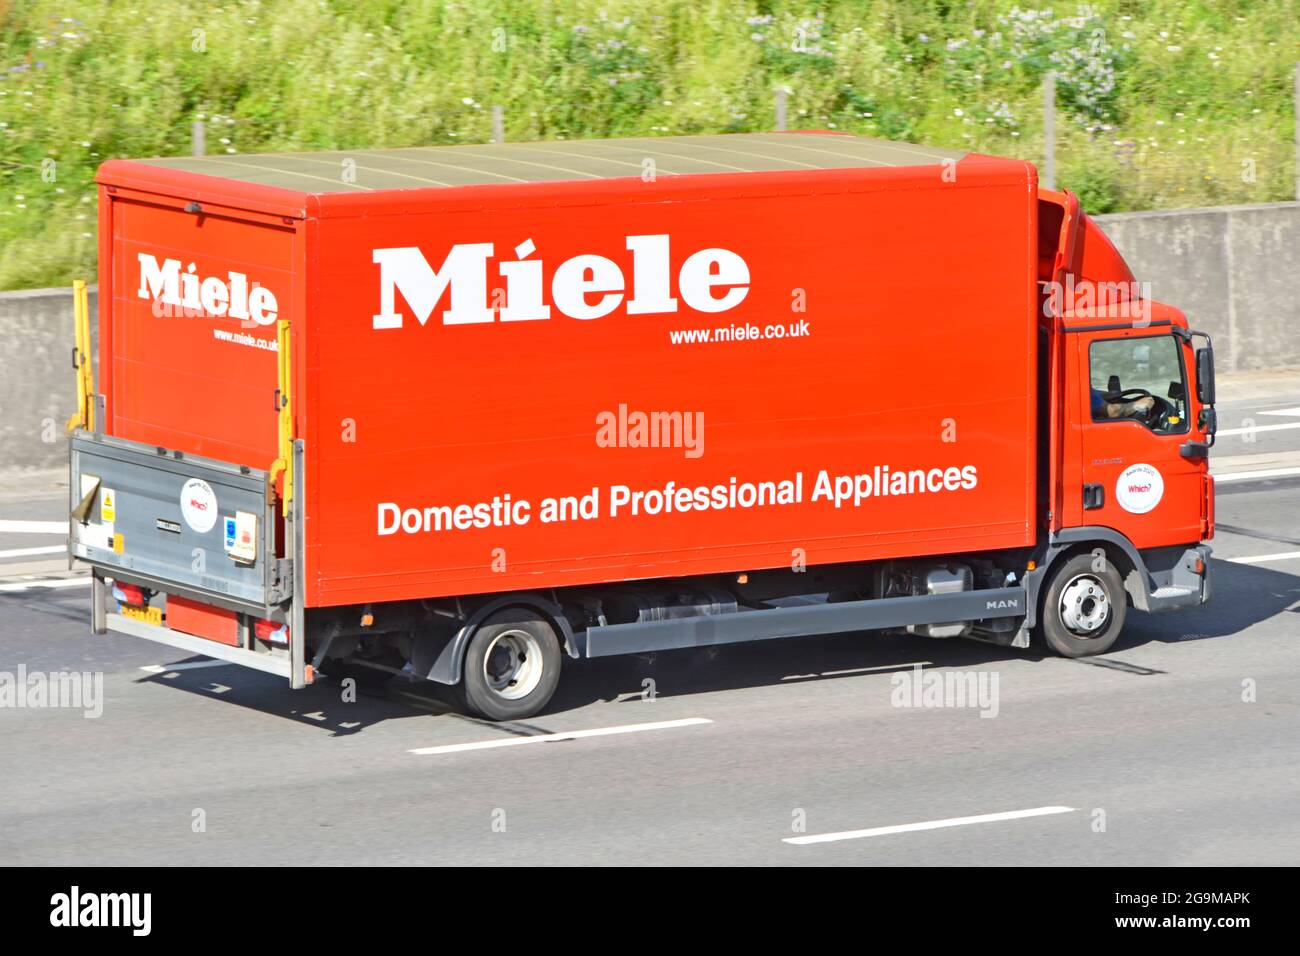 Vista posteriore del portellone della pubblicità del marchio Miele per elettrodomestici e professionali sul lato di autocarri che guidano sull'autostrada del Regno Unito Foto Stock